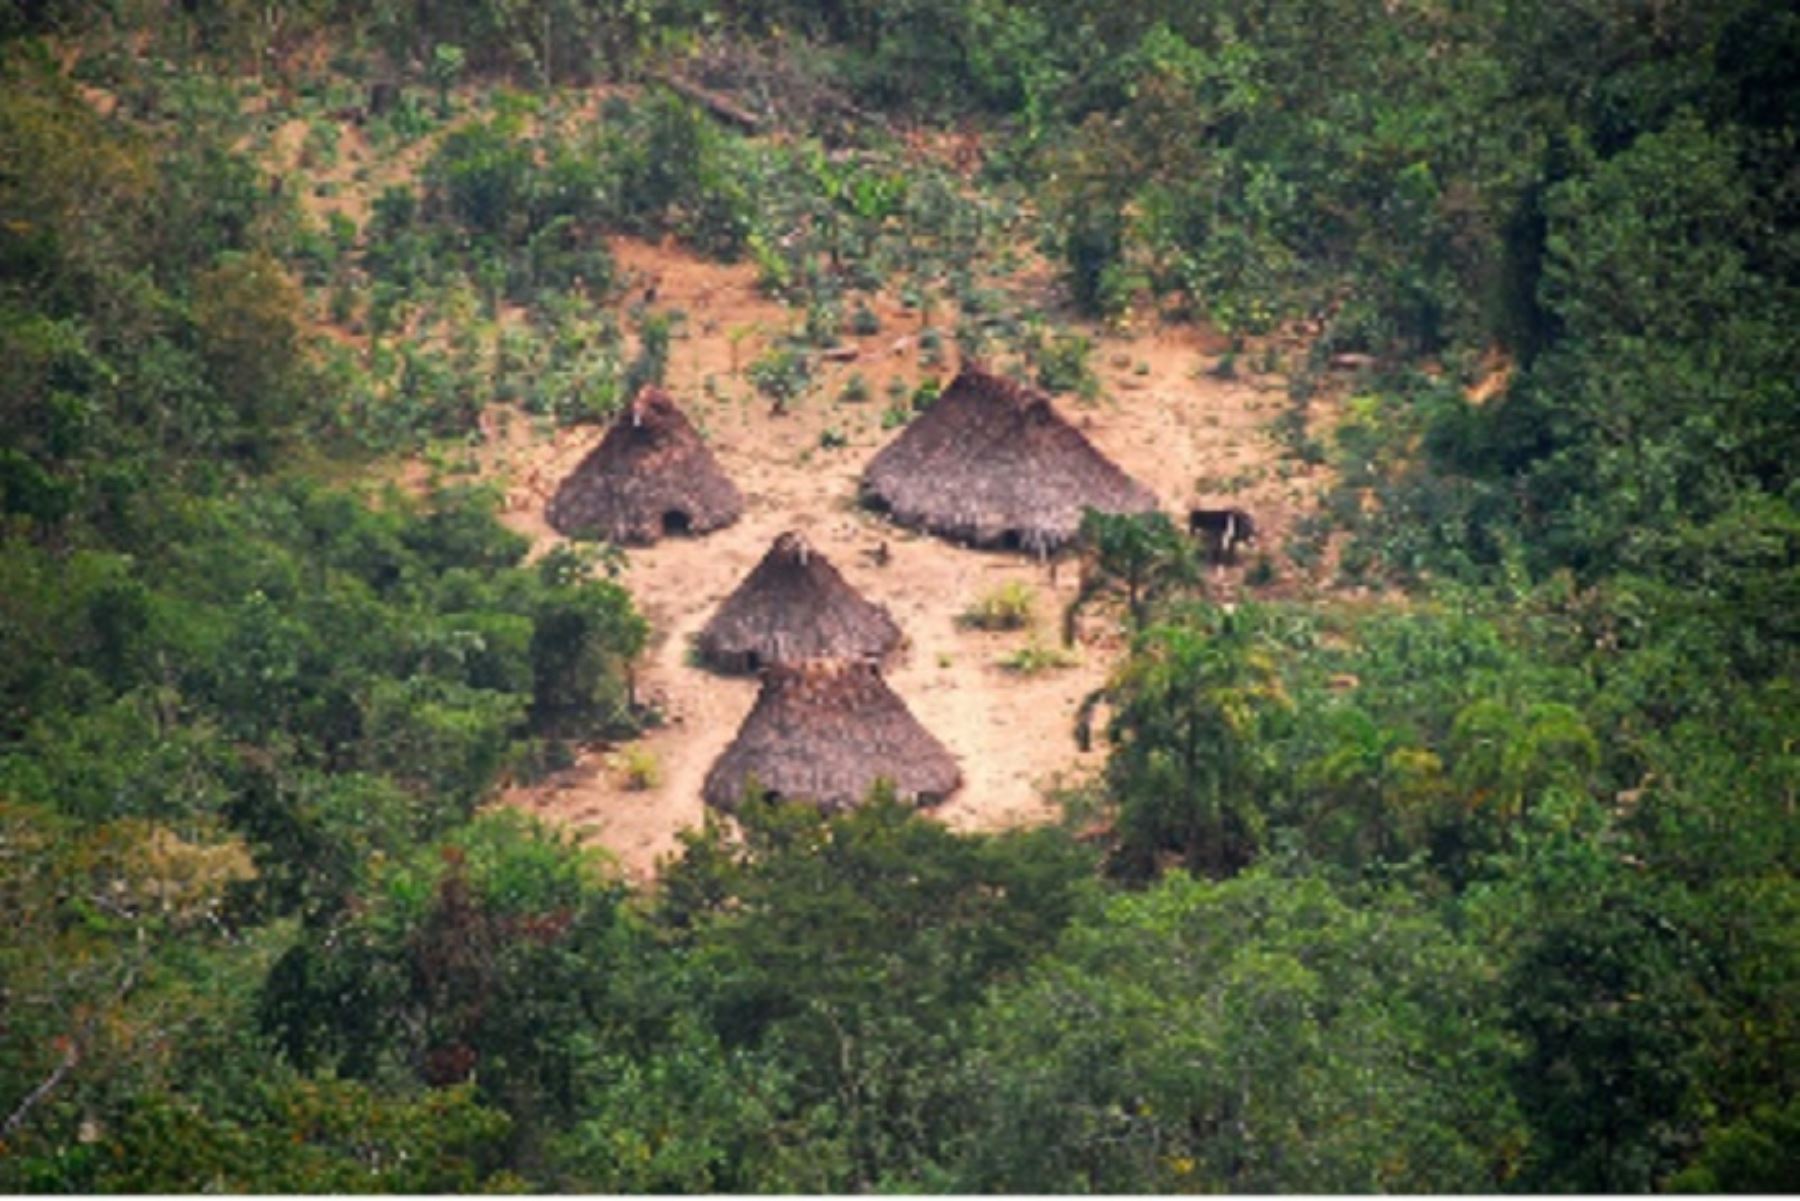 Proceso se concreta tras articulación con ORPIO a fin de proteger áreas donde viven pueblos indígenas en aislamiento ante amenazas como la tala ilegal y el narcotráfico.